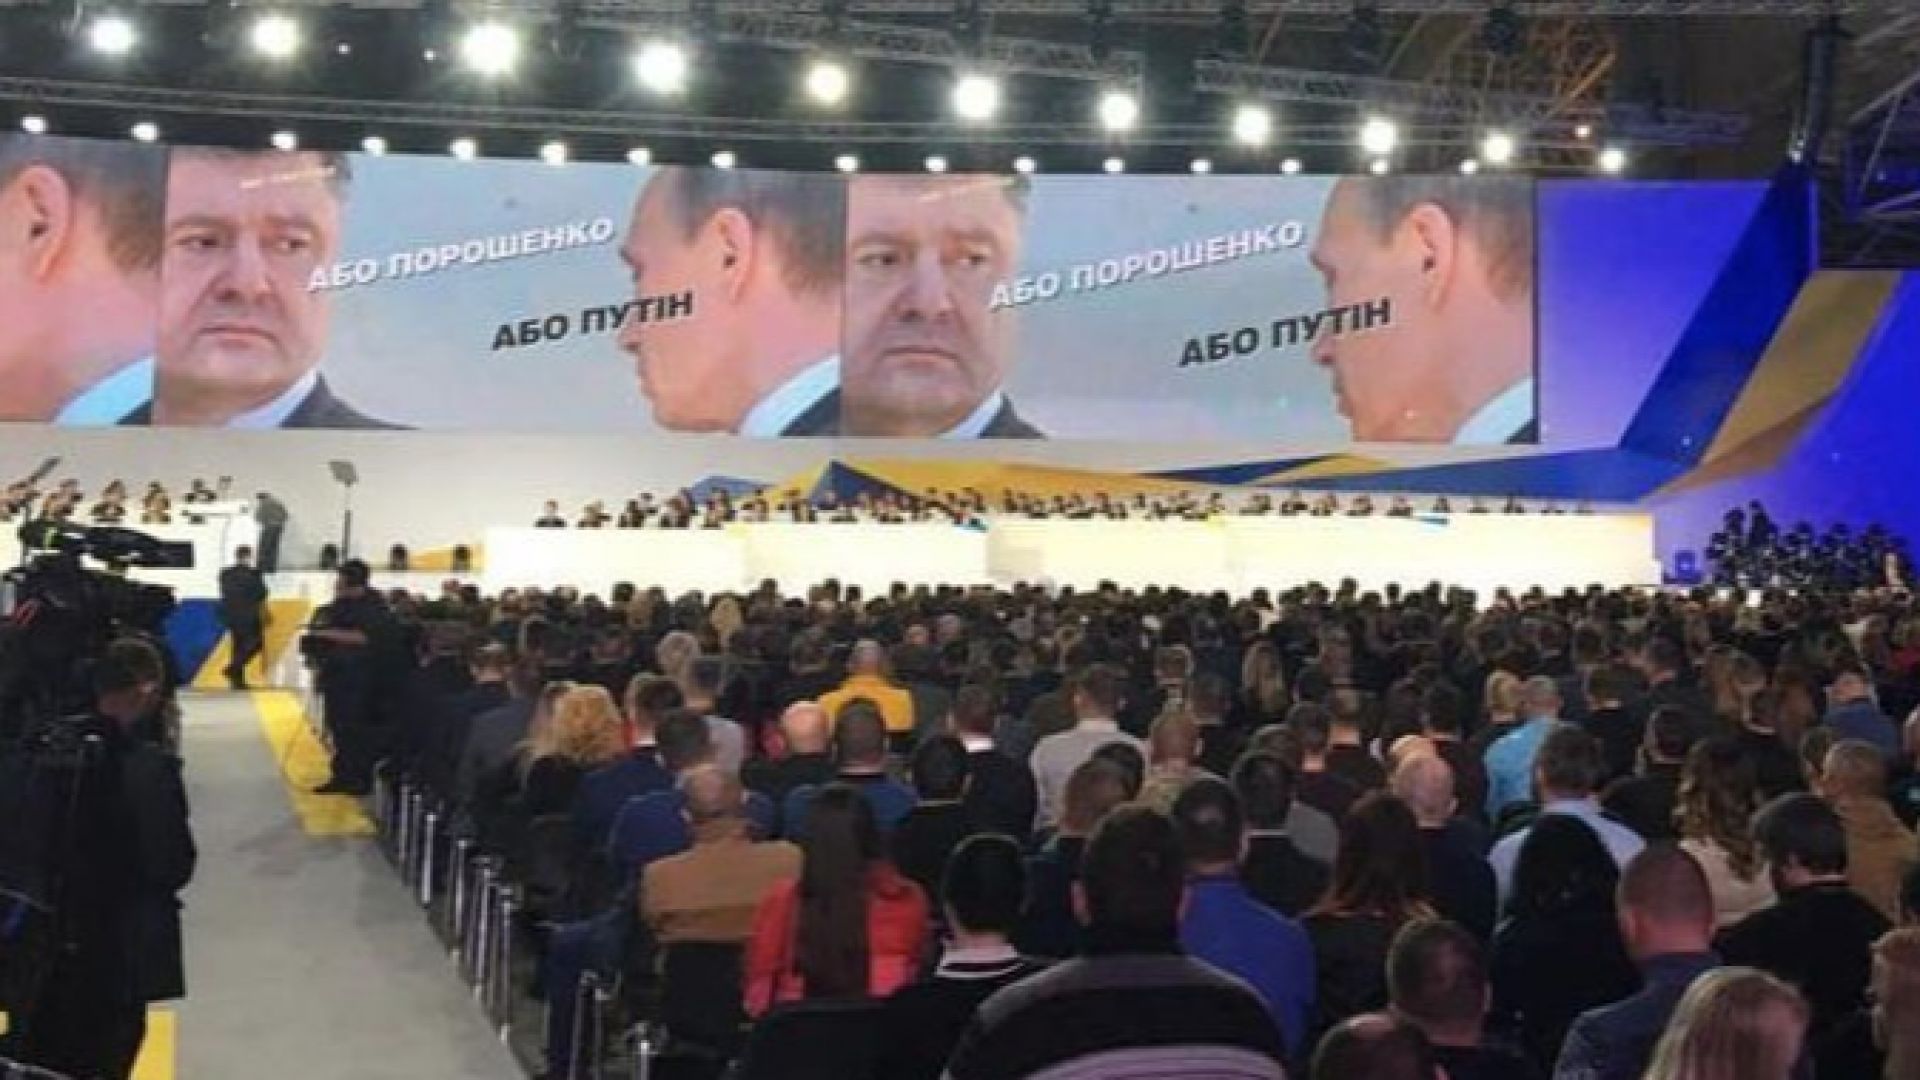 Президентът на Украйна Петро Порошенко нарече предизборния си лозунг Или